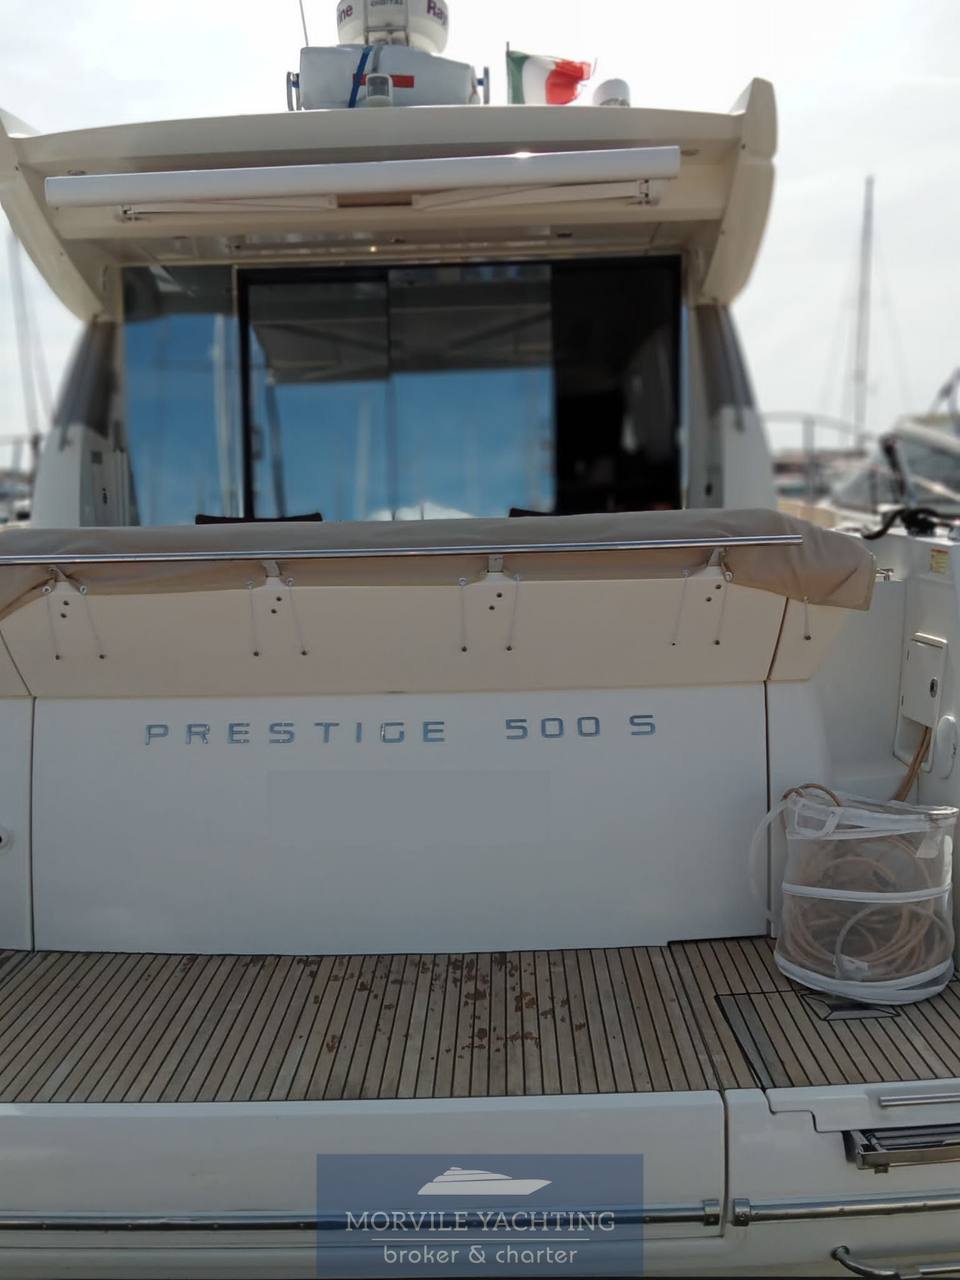 Prestige 500 s